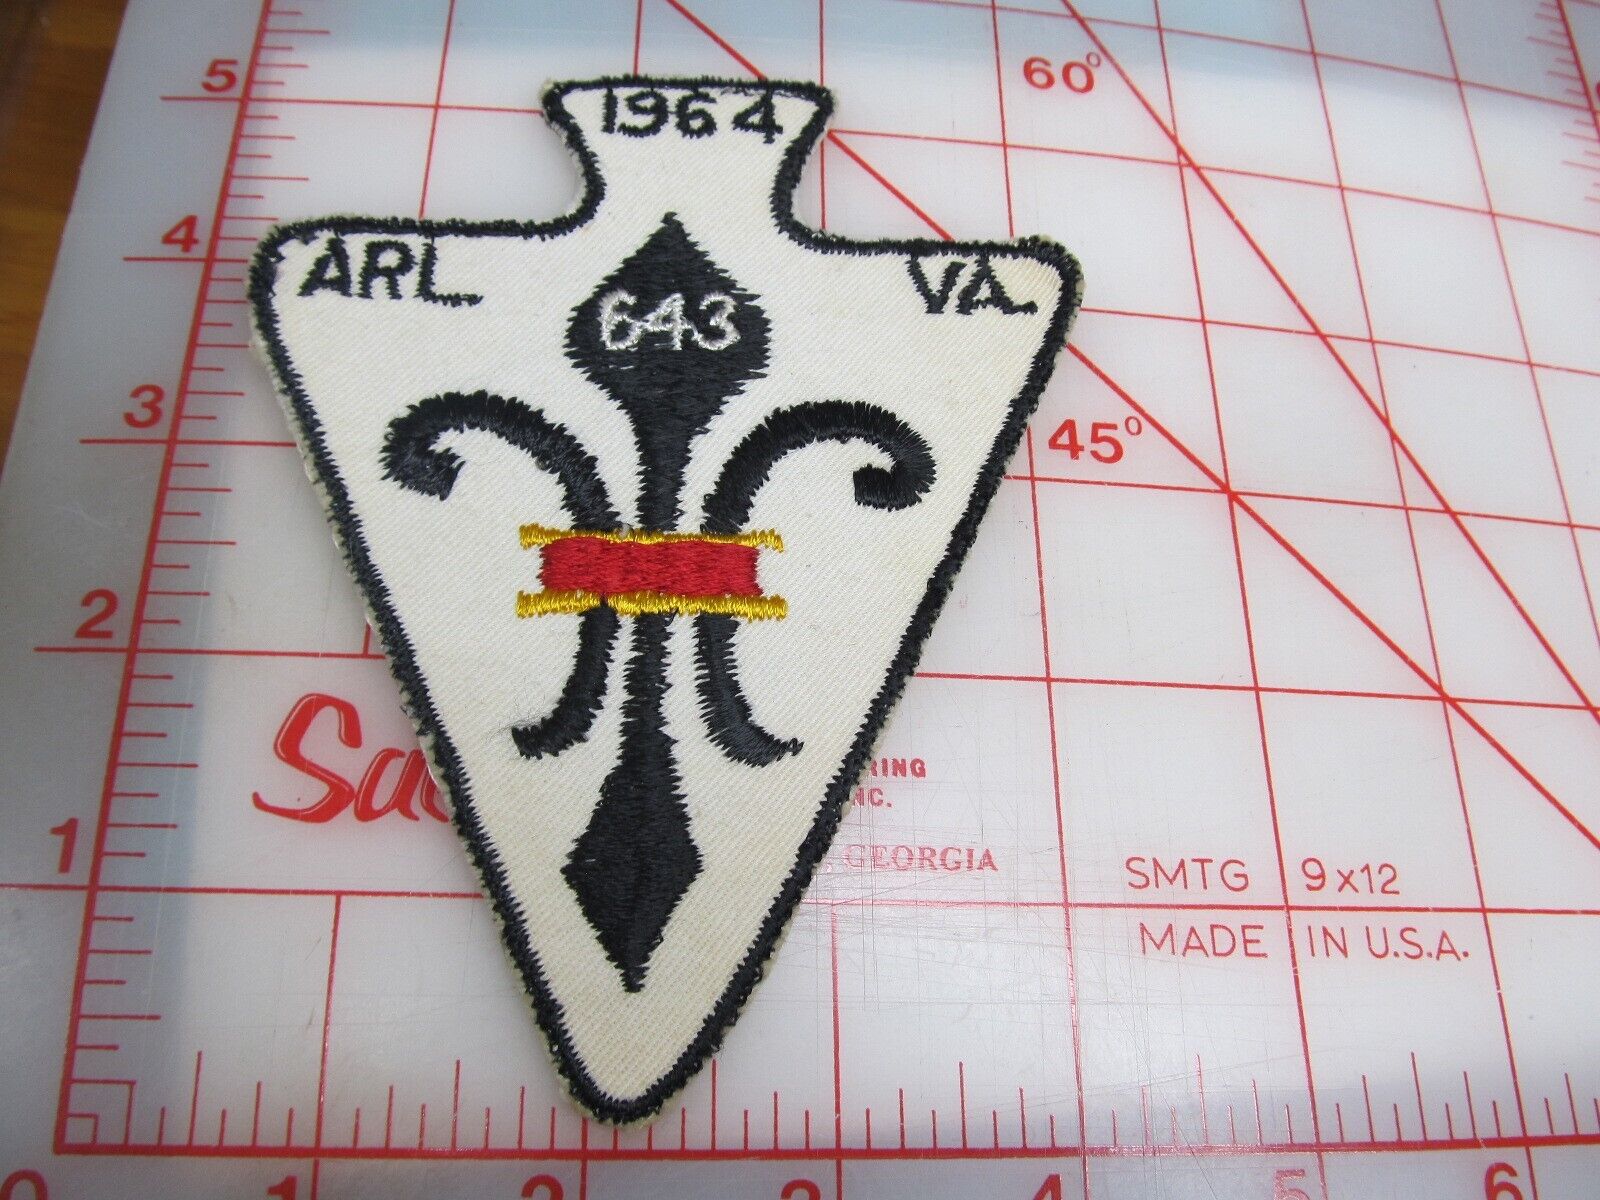 1964 ARL. VA. 643 collectible patch (o35)